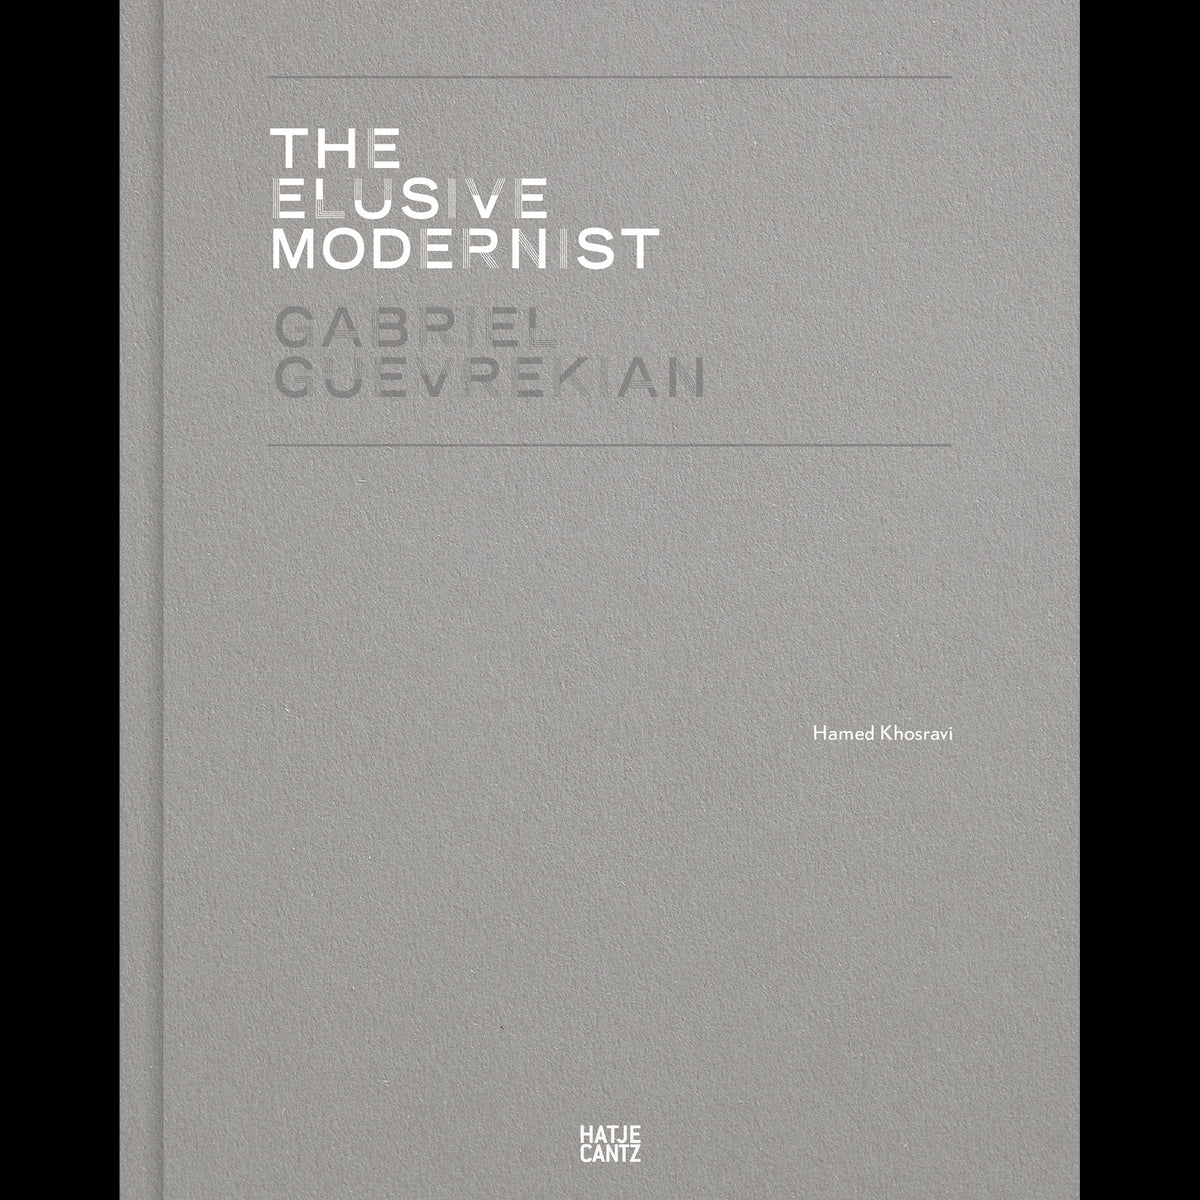 Coverbild Gabriel Guevrekian